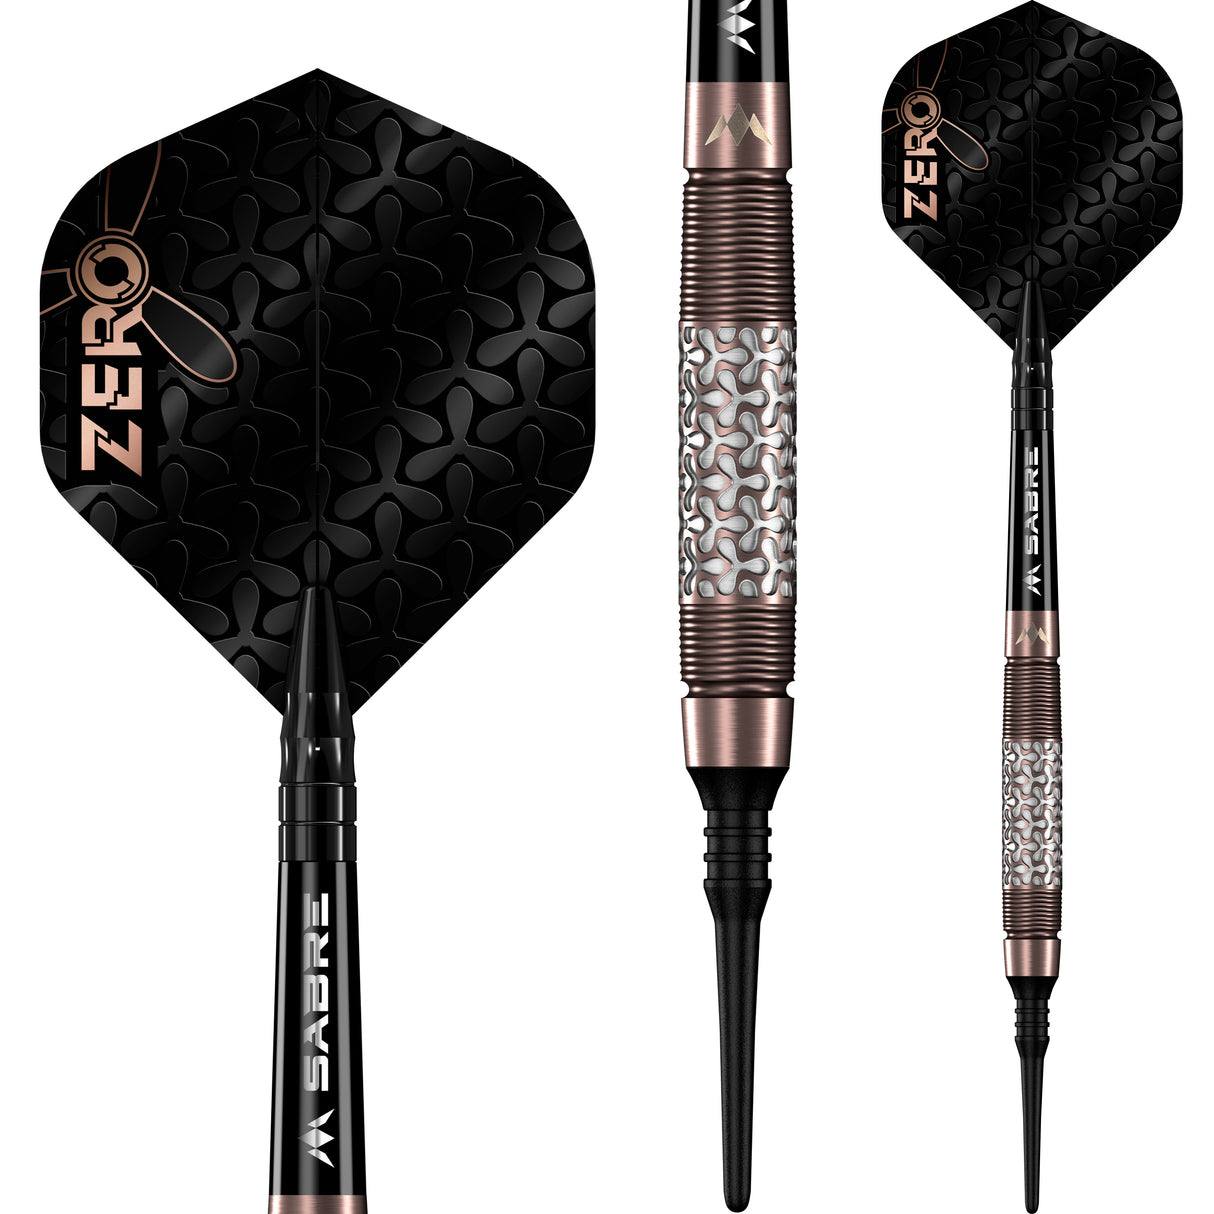 Mission Zero Darts - Soft Tip - 97.5% Tungsten - Bronze PVD